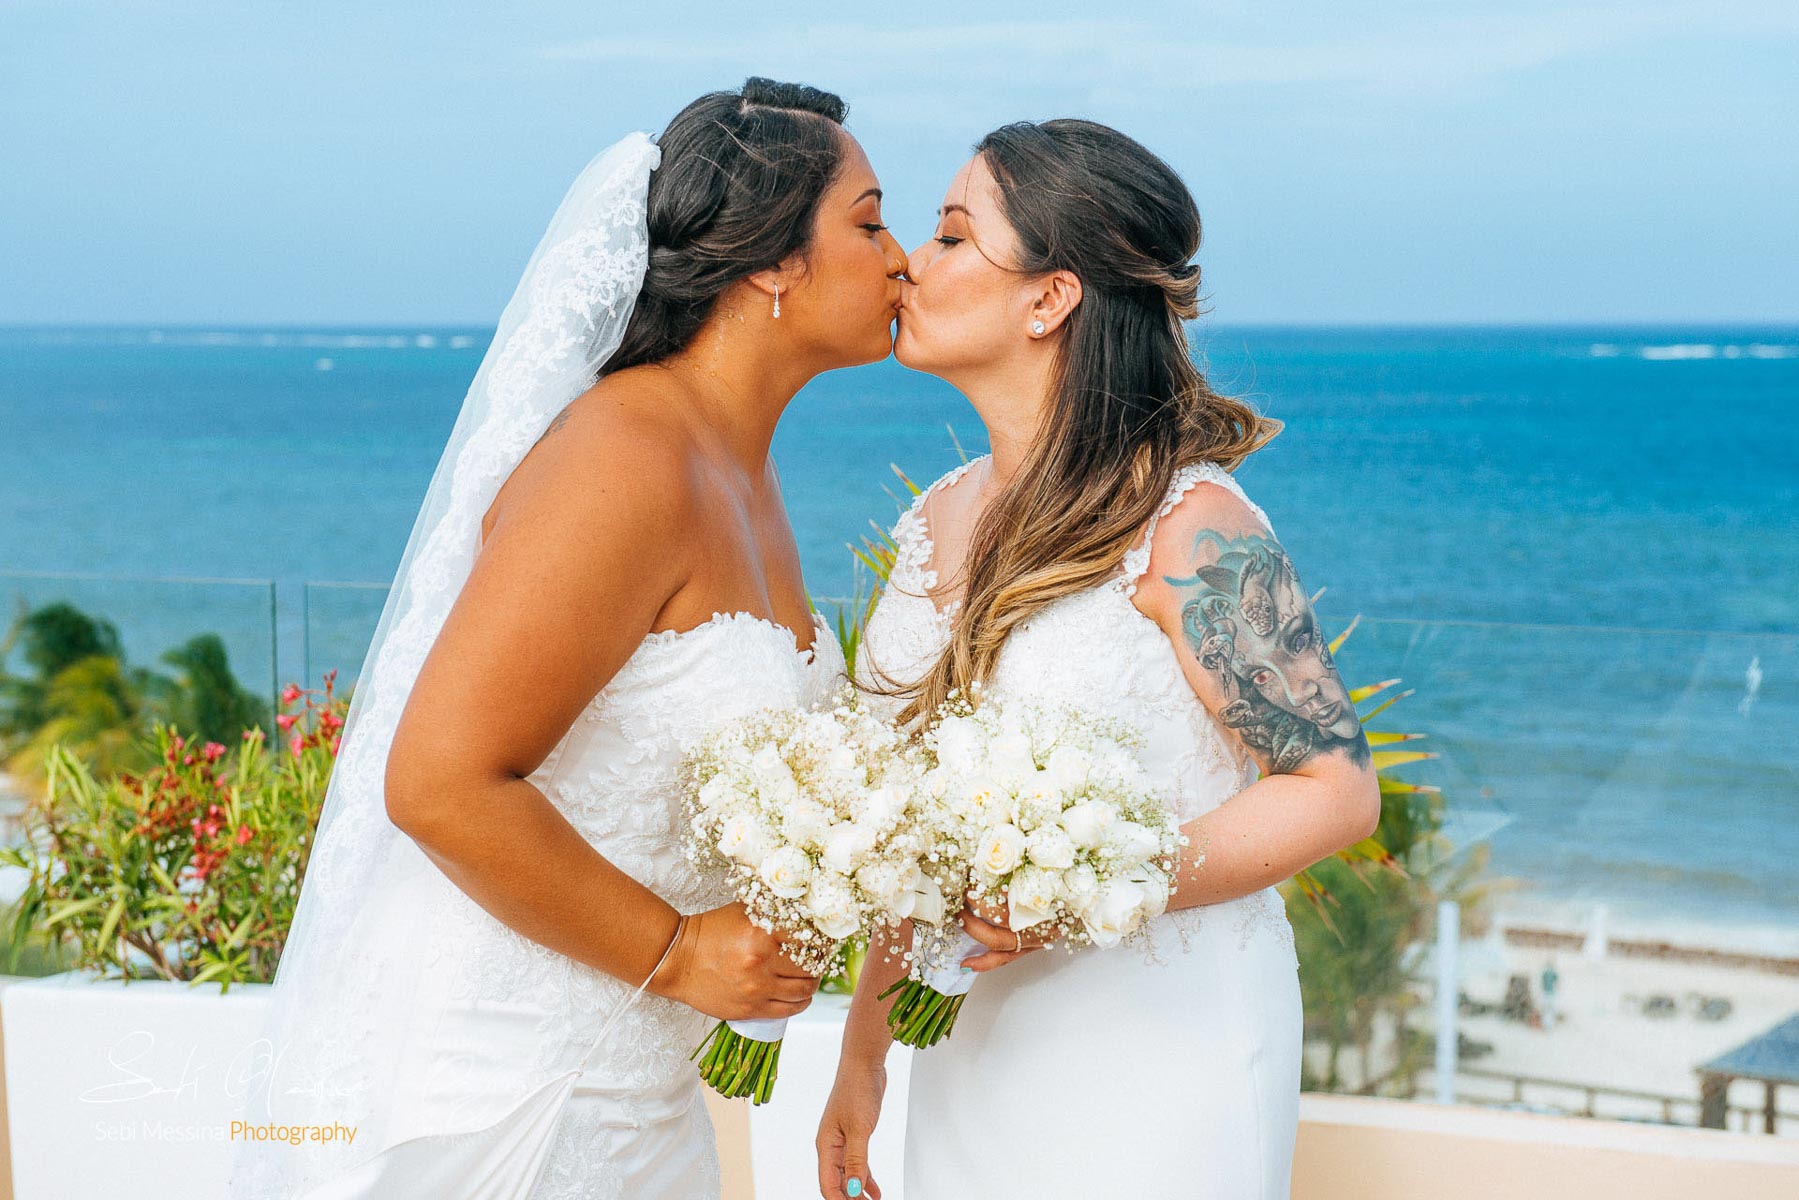 Royalton Cancun Sky Terrace - Same-sex wedding Mexico - Sebi Messina Photography